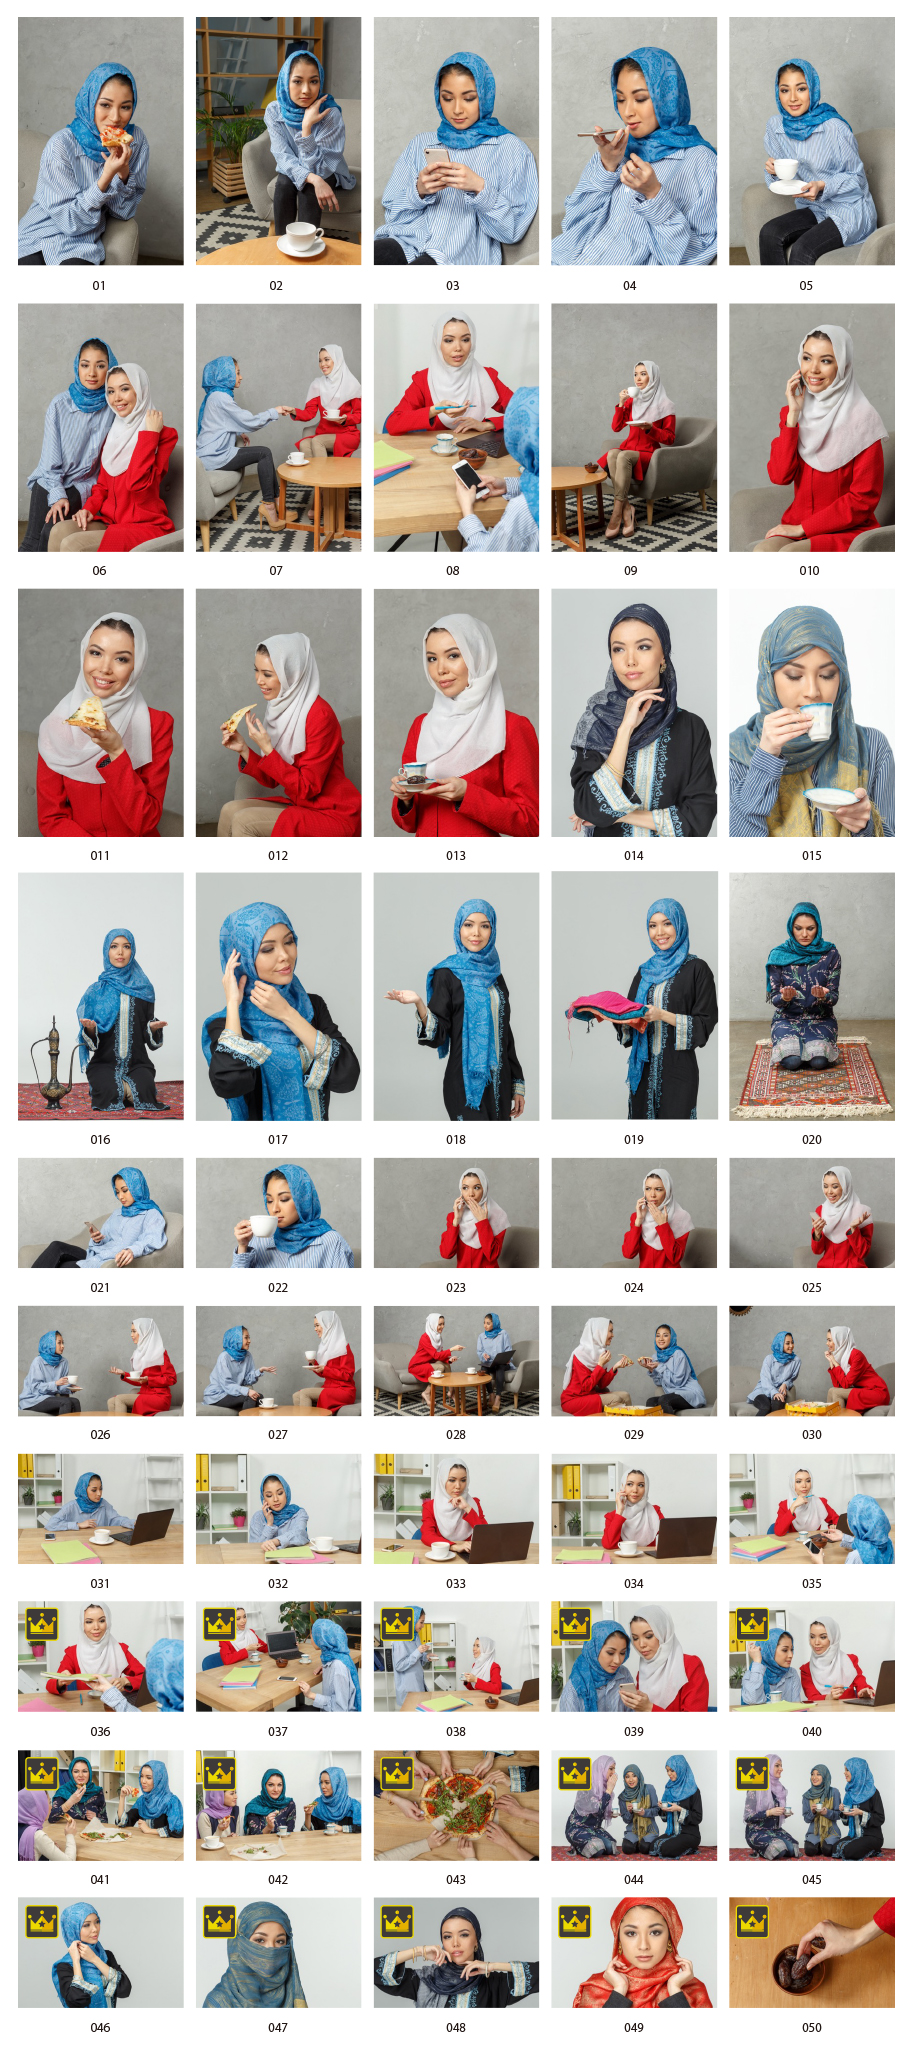 Hijab Asian women stock photos